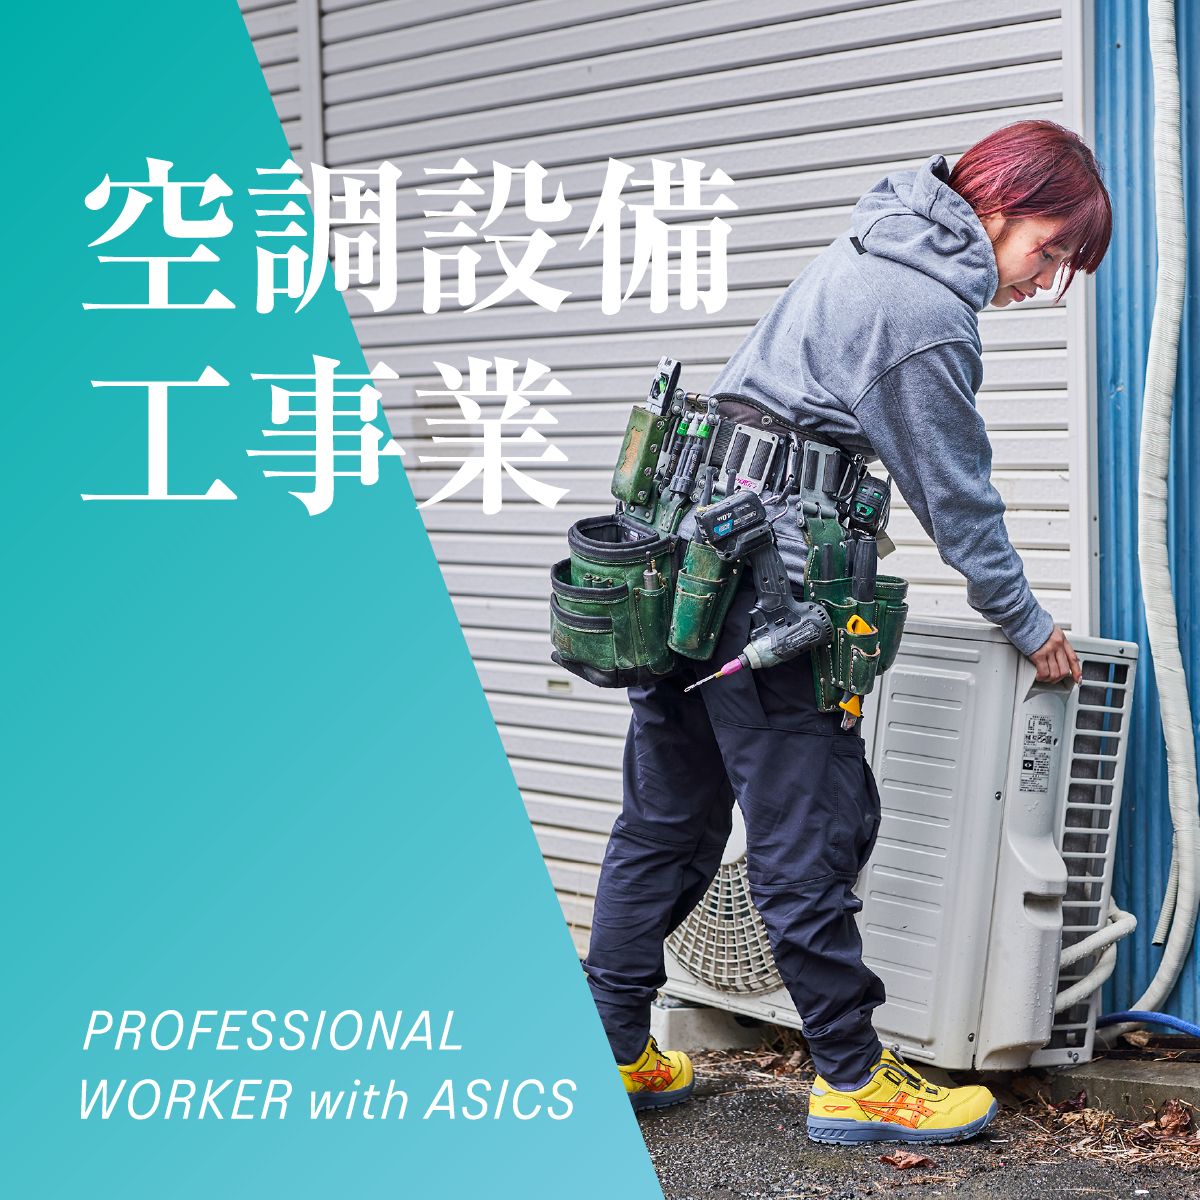 空調設備工事業 PROFESSIONAL WORKER with ASICS